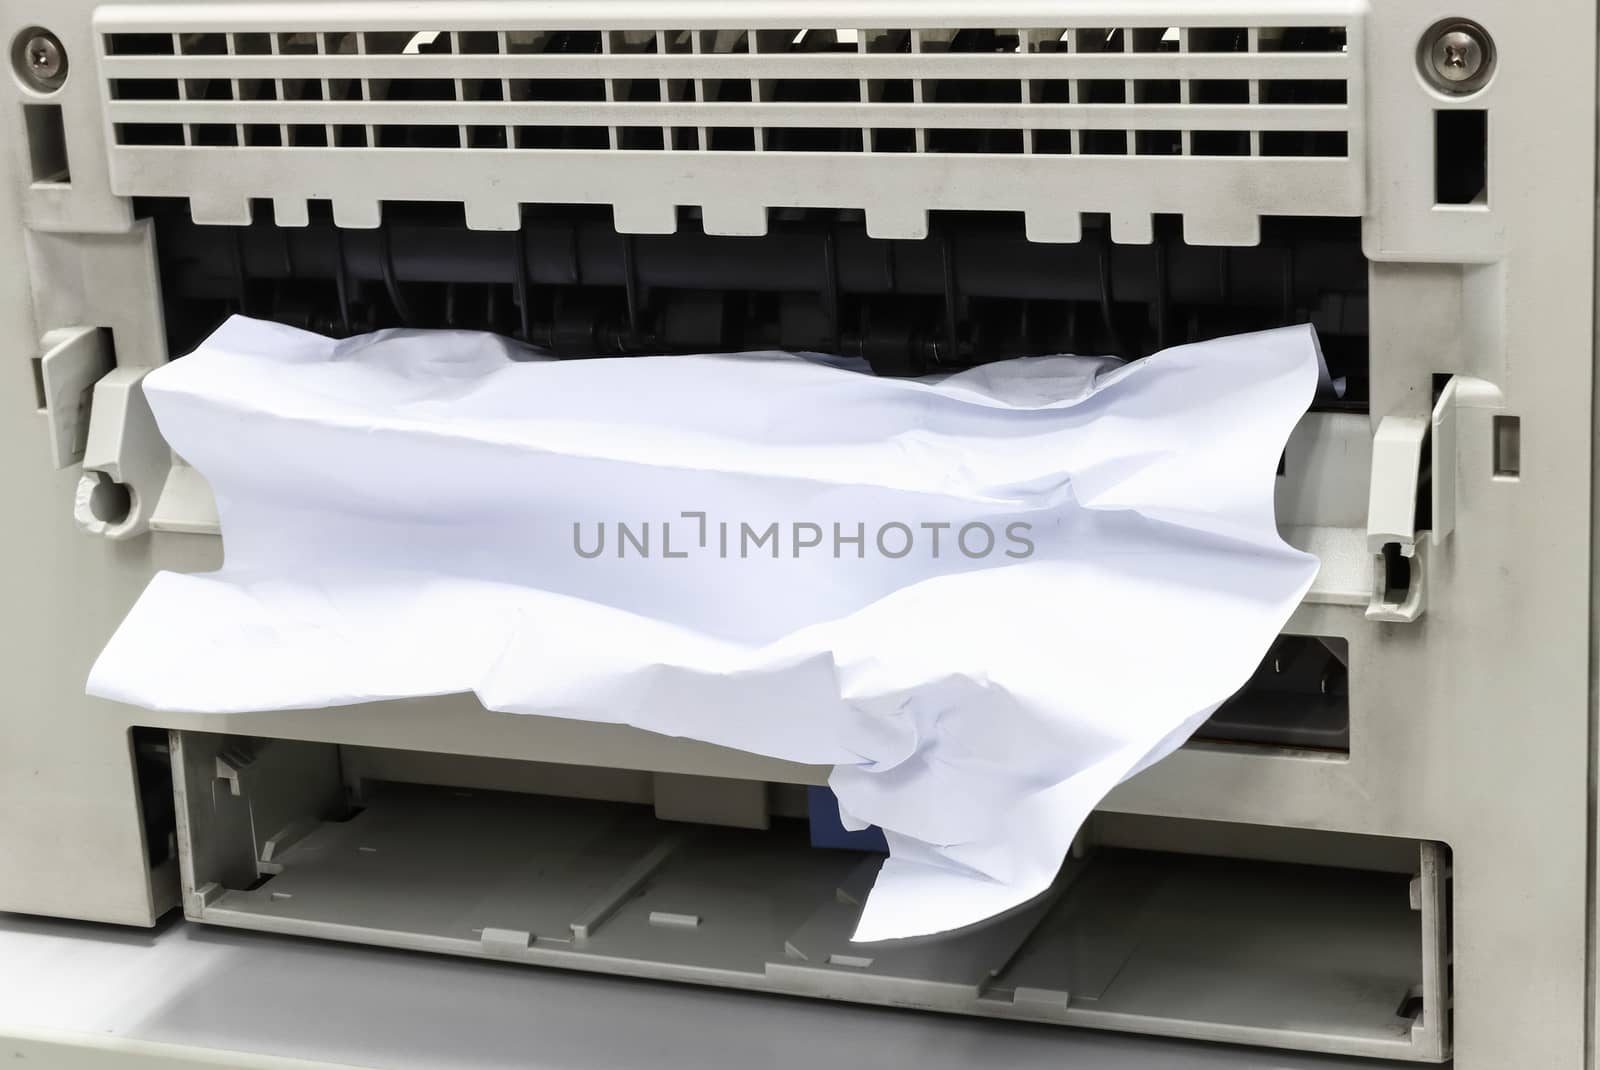 Paper Stuck, Paper Jam In Printer At Office